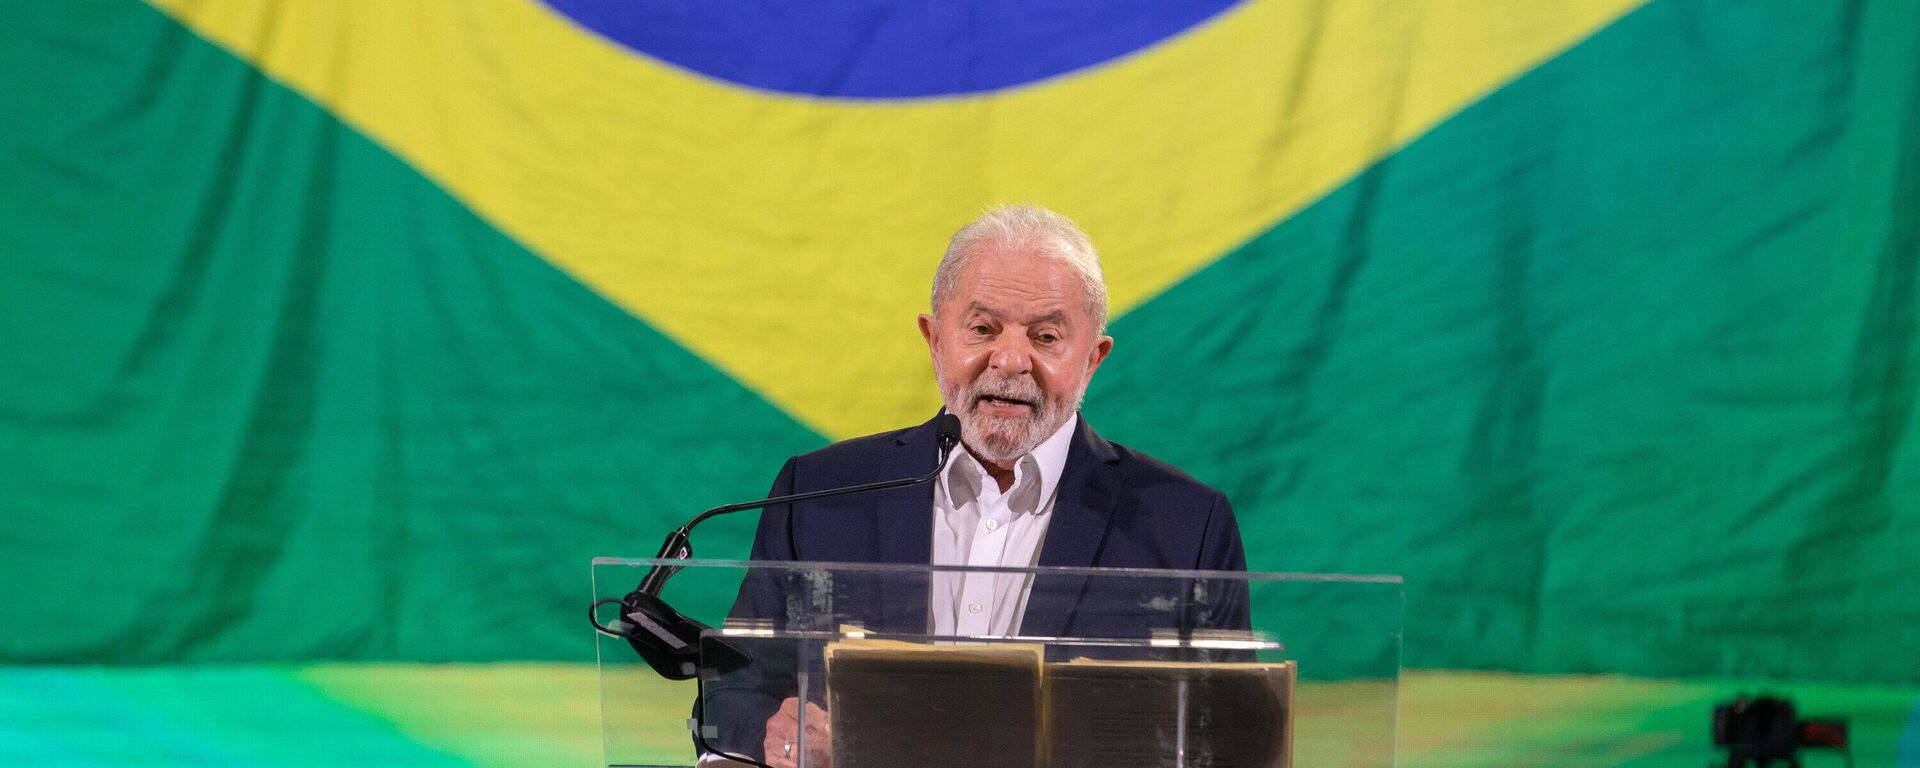 O ex-presidente Luiz Inácio Lula da Silva (PT) participa de evento de lançamento de sua pré-candidatura à presidência na chapa ao lado do ex-governador de São Paulo Geraldo Alckmin (PSB), em São Paulo, 7 de maio de 2022. - Sputnik Brasil, 1920, 07.05.2022